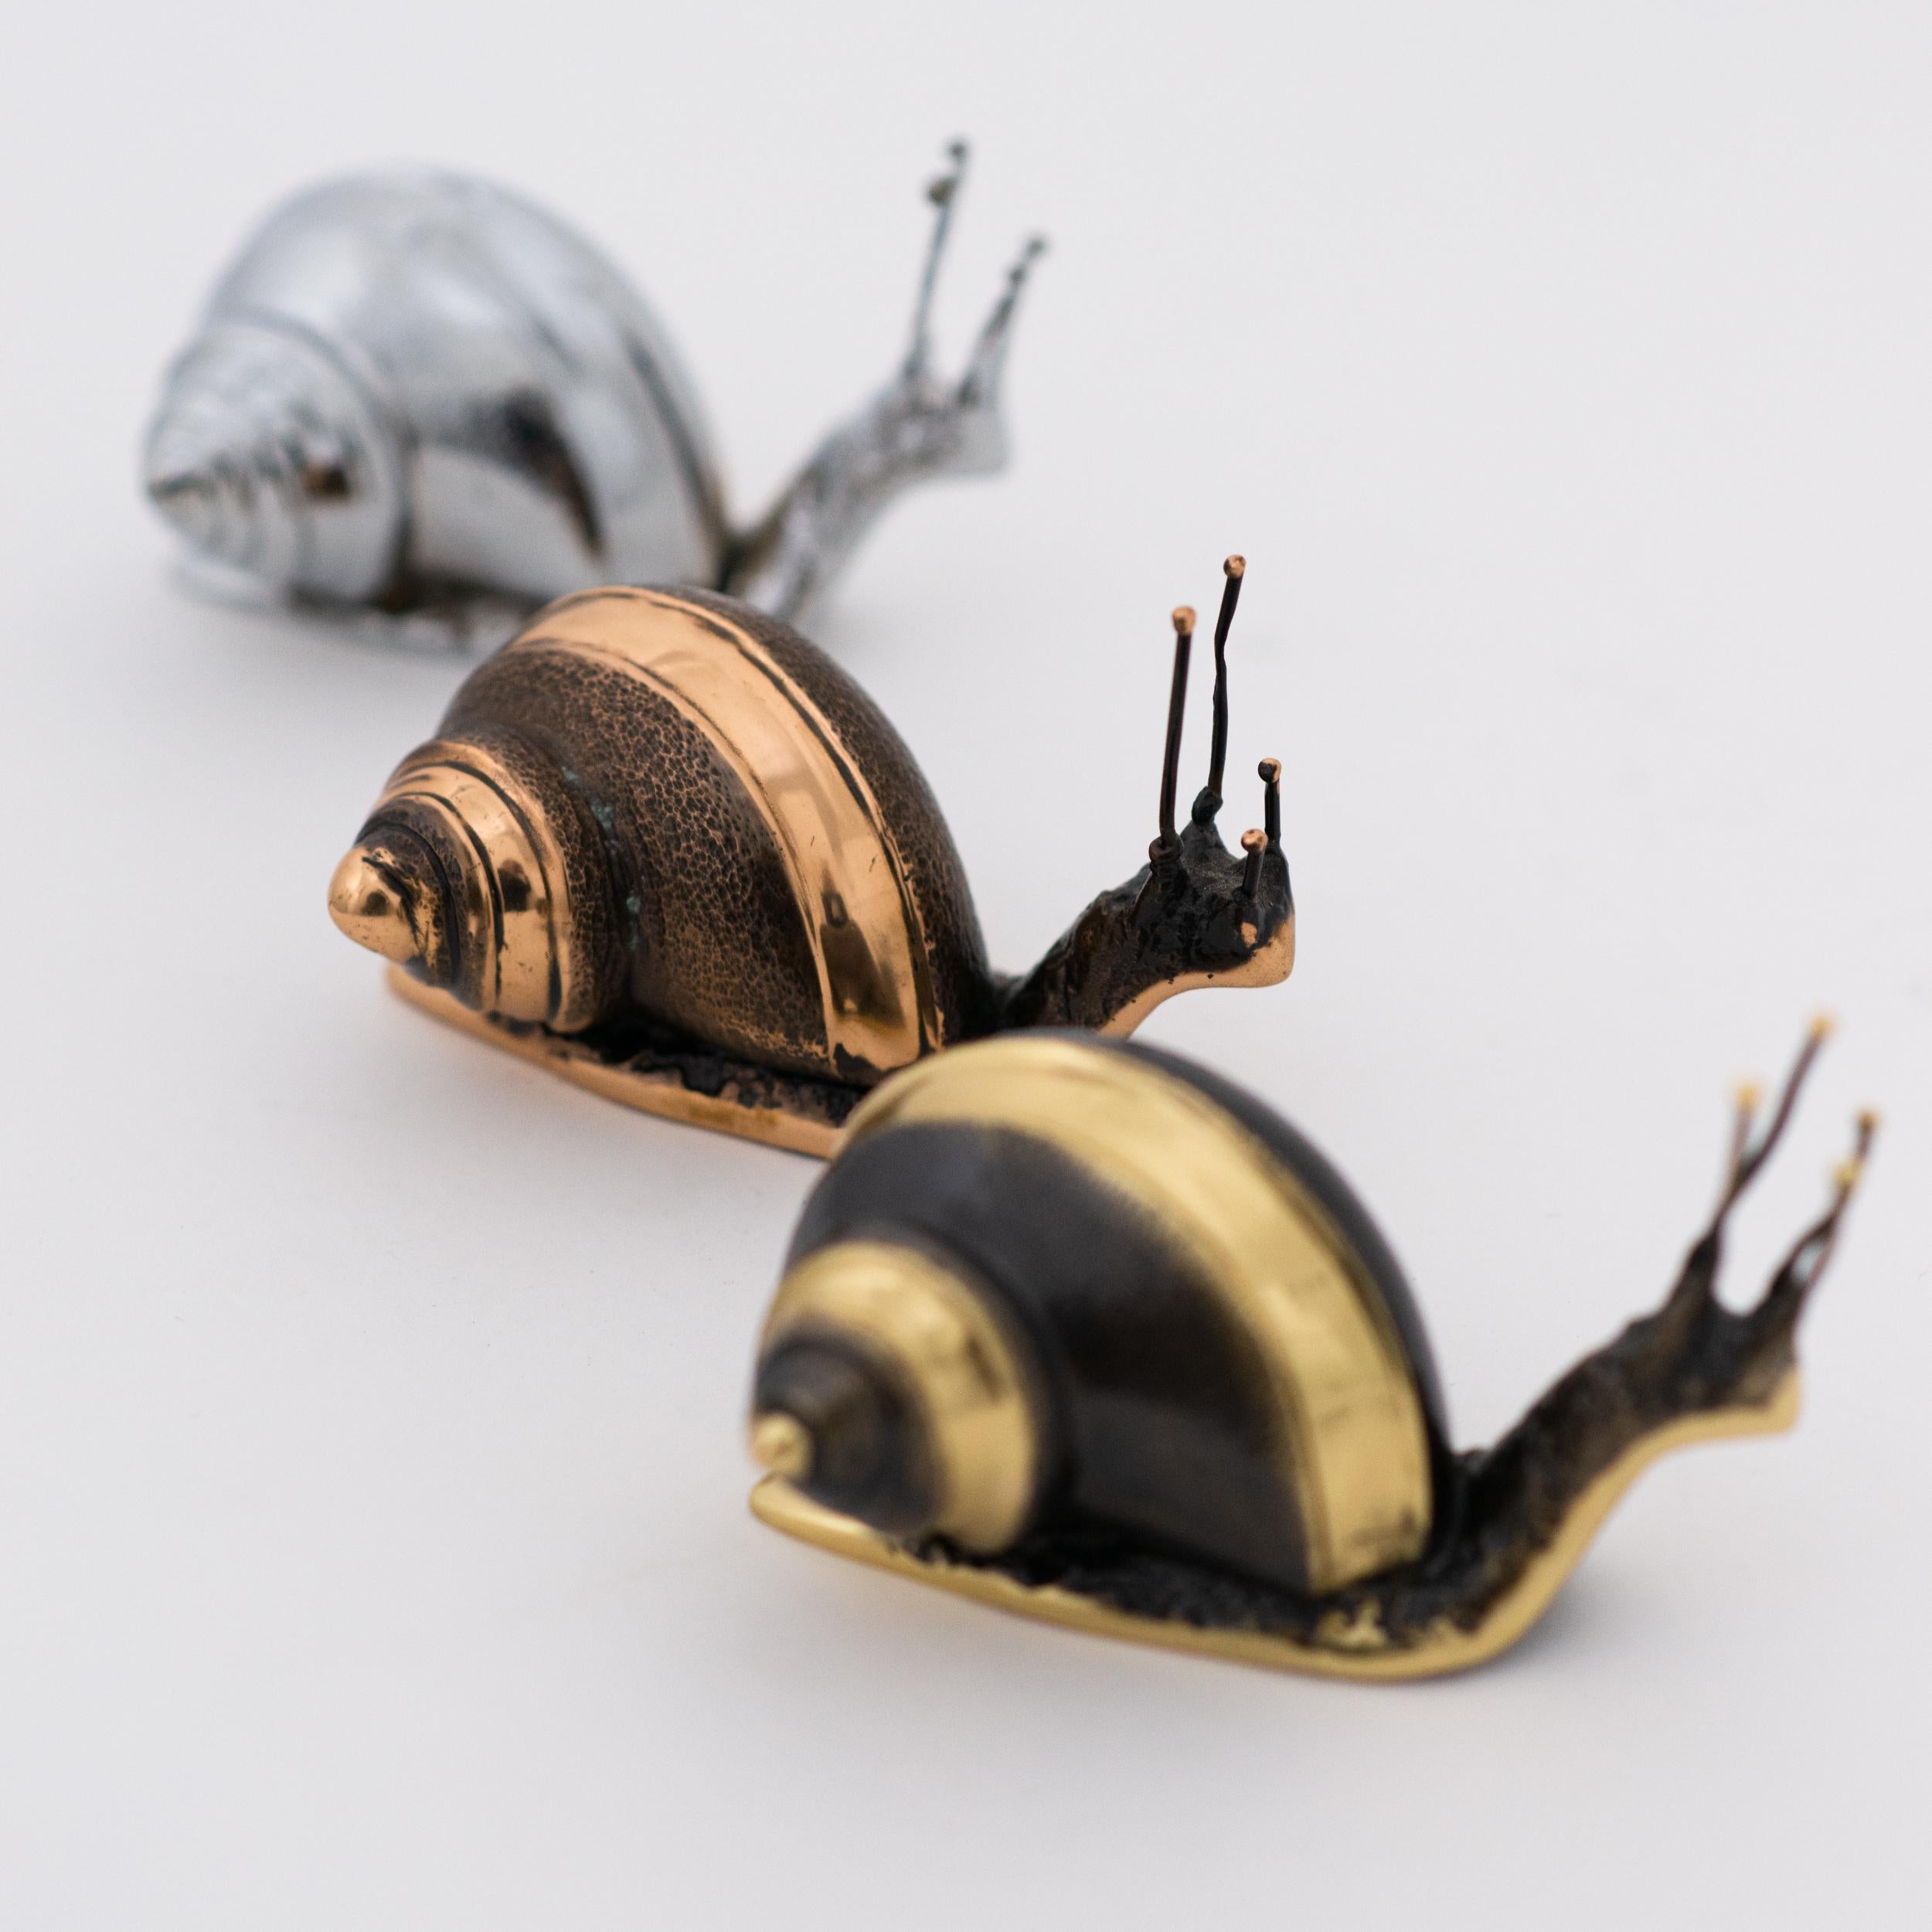 Chacun de ces exquis escargots en bronze massif est fabriqué à la main, individuellement, avec un niveau de détail incroyable. Coulée selon des techniques très traditionnelles, la matière noble est vieillie en dévoilant une belle patine et finie par